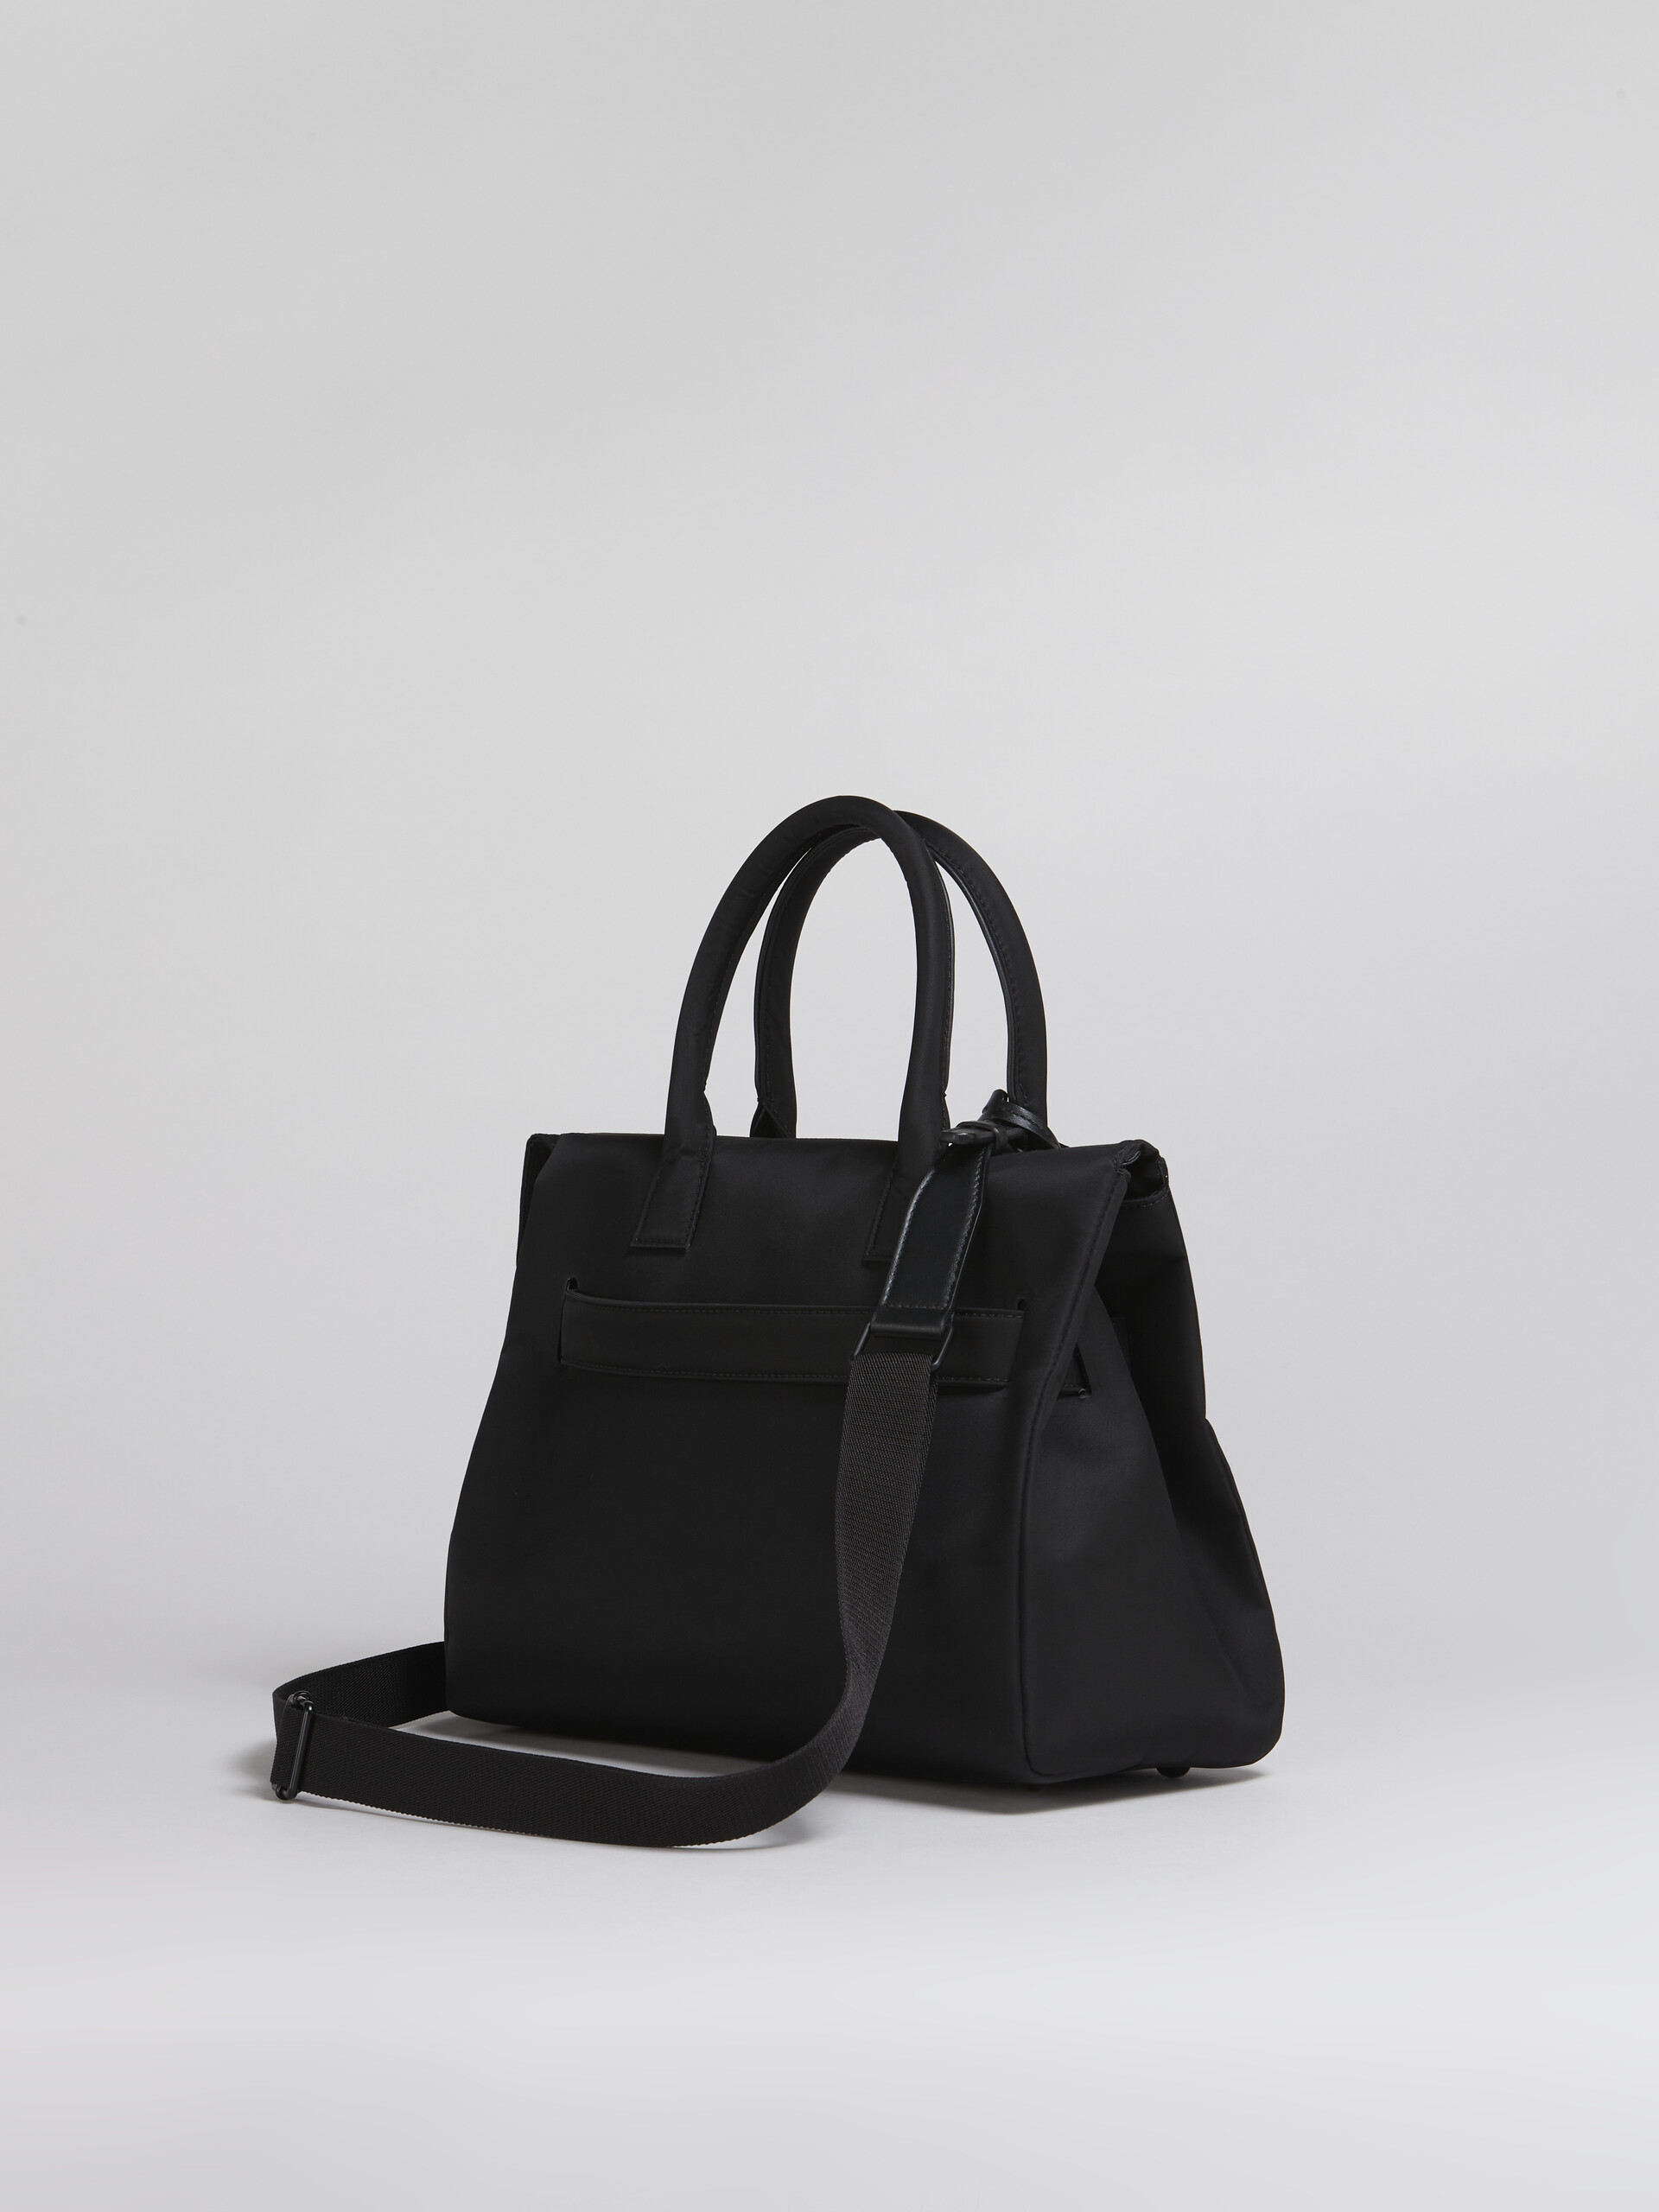 Black nylon TREASURE bag - Handbag - Image 3